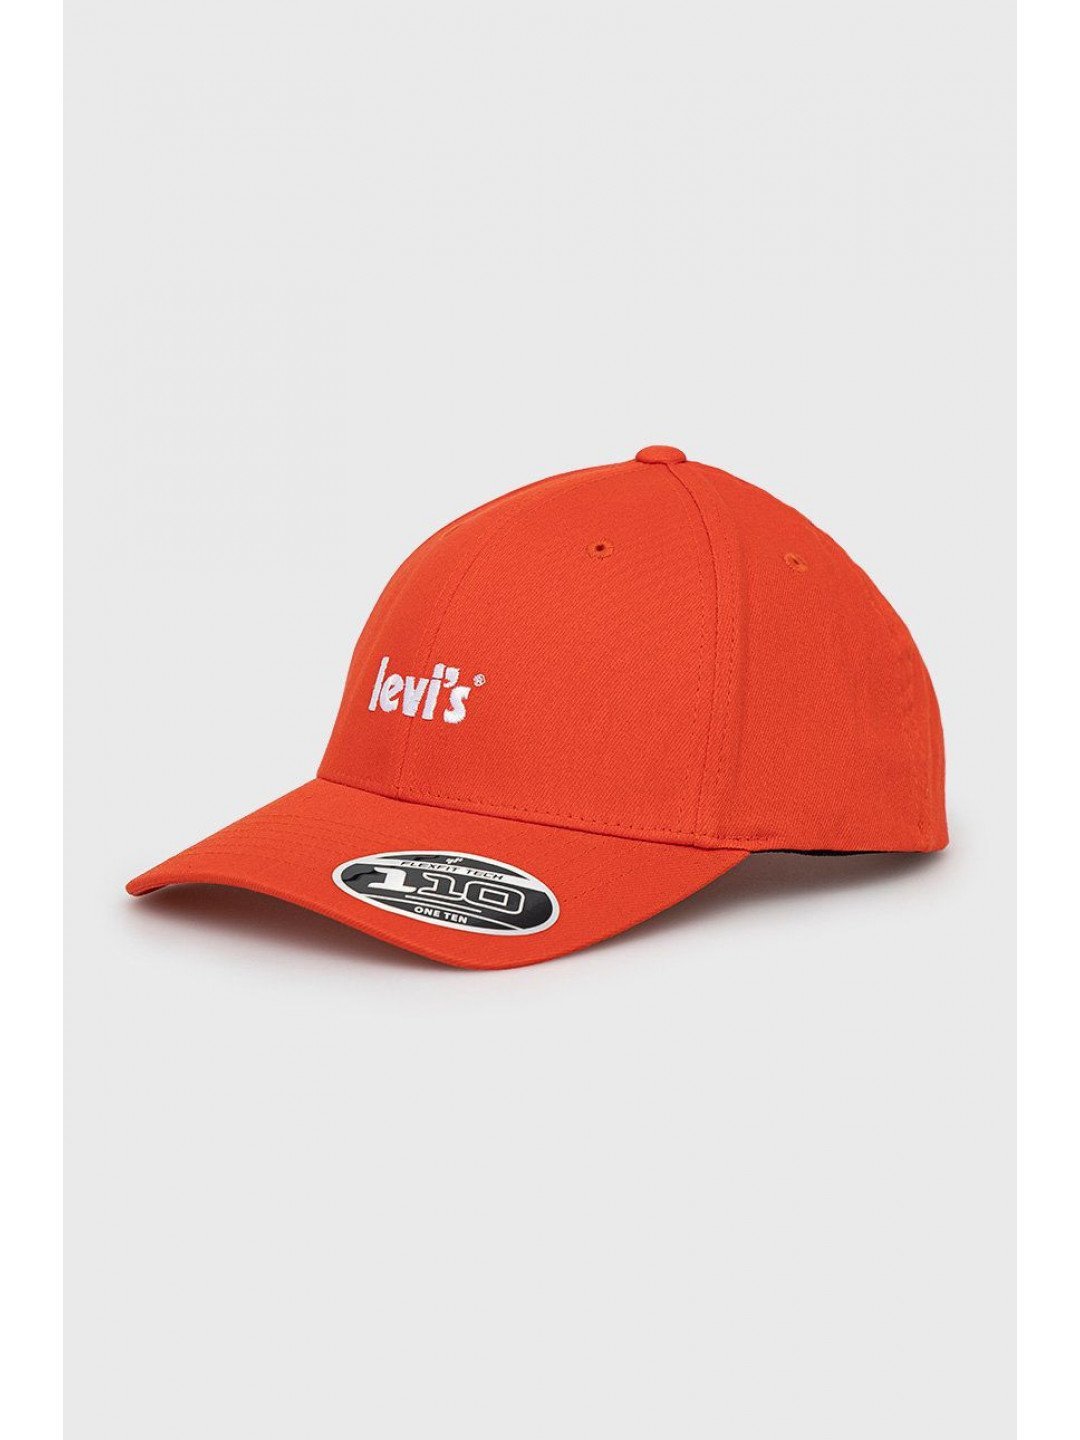 Čepice Levi s oranžová barva s aplikací